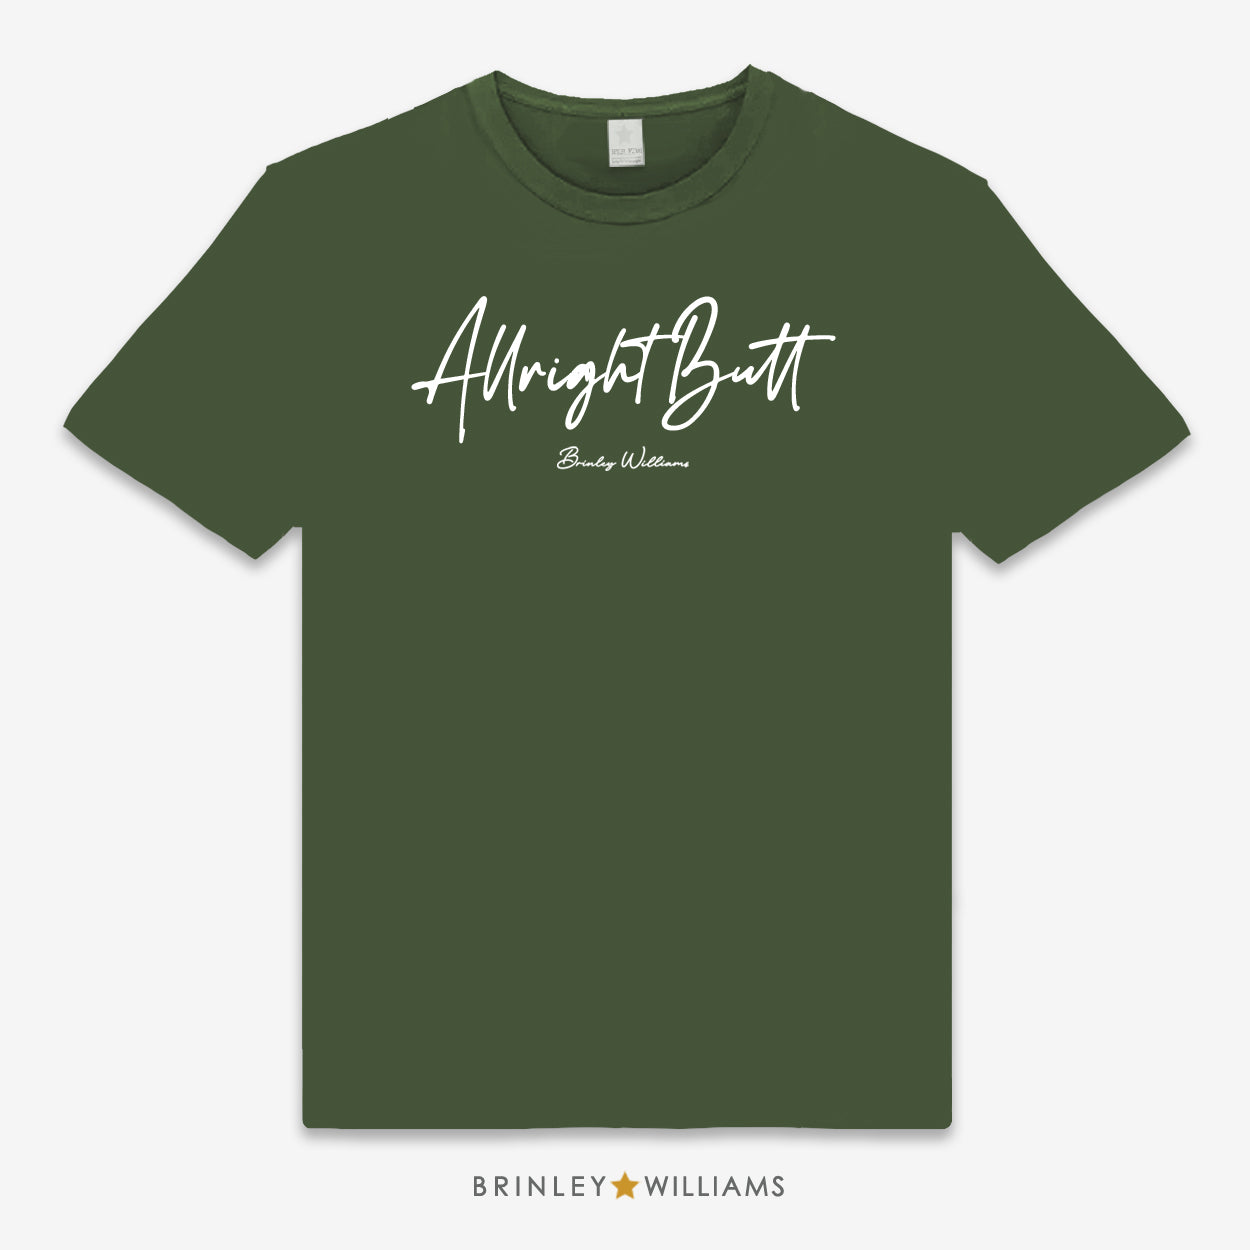 Allright Butt Unisex Classic T-shirt - Military Green